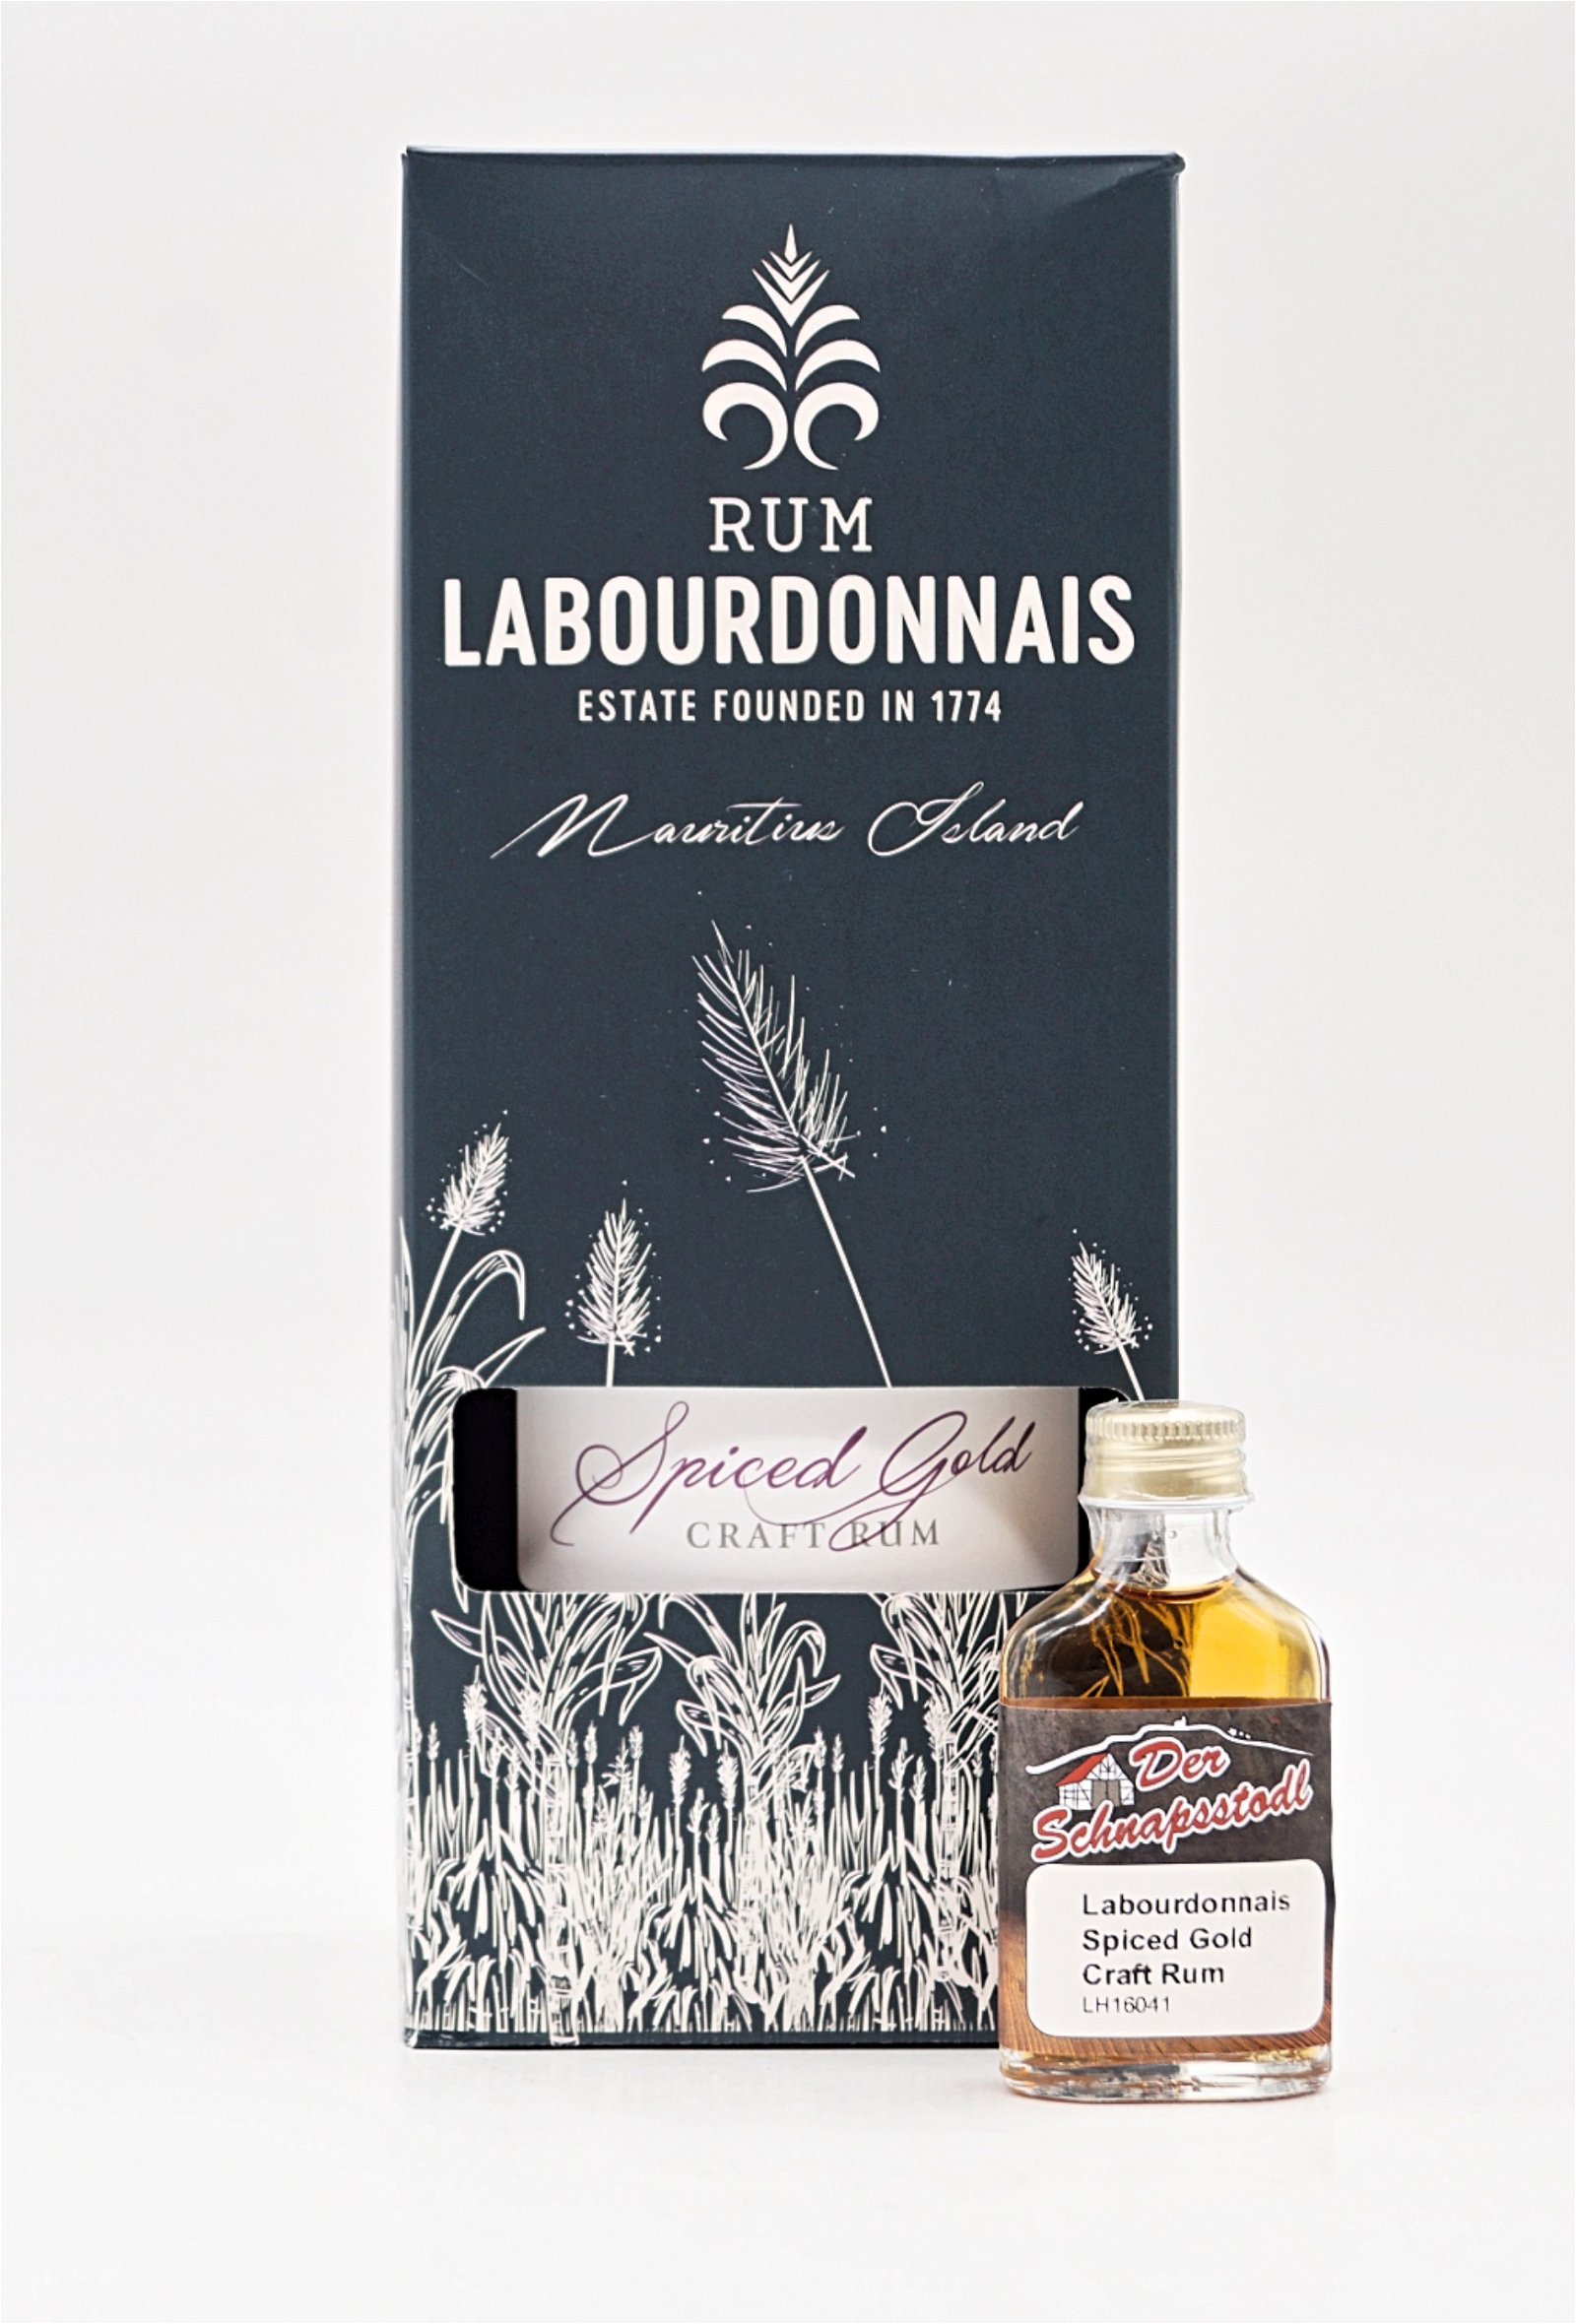 Labourdonnais Spiced Gold Craft Rum